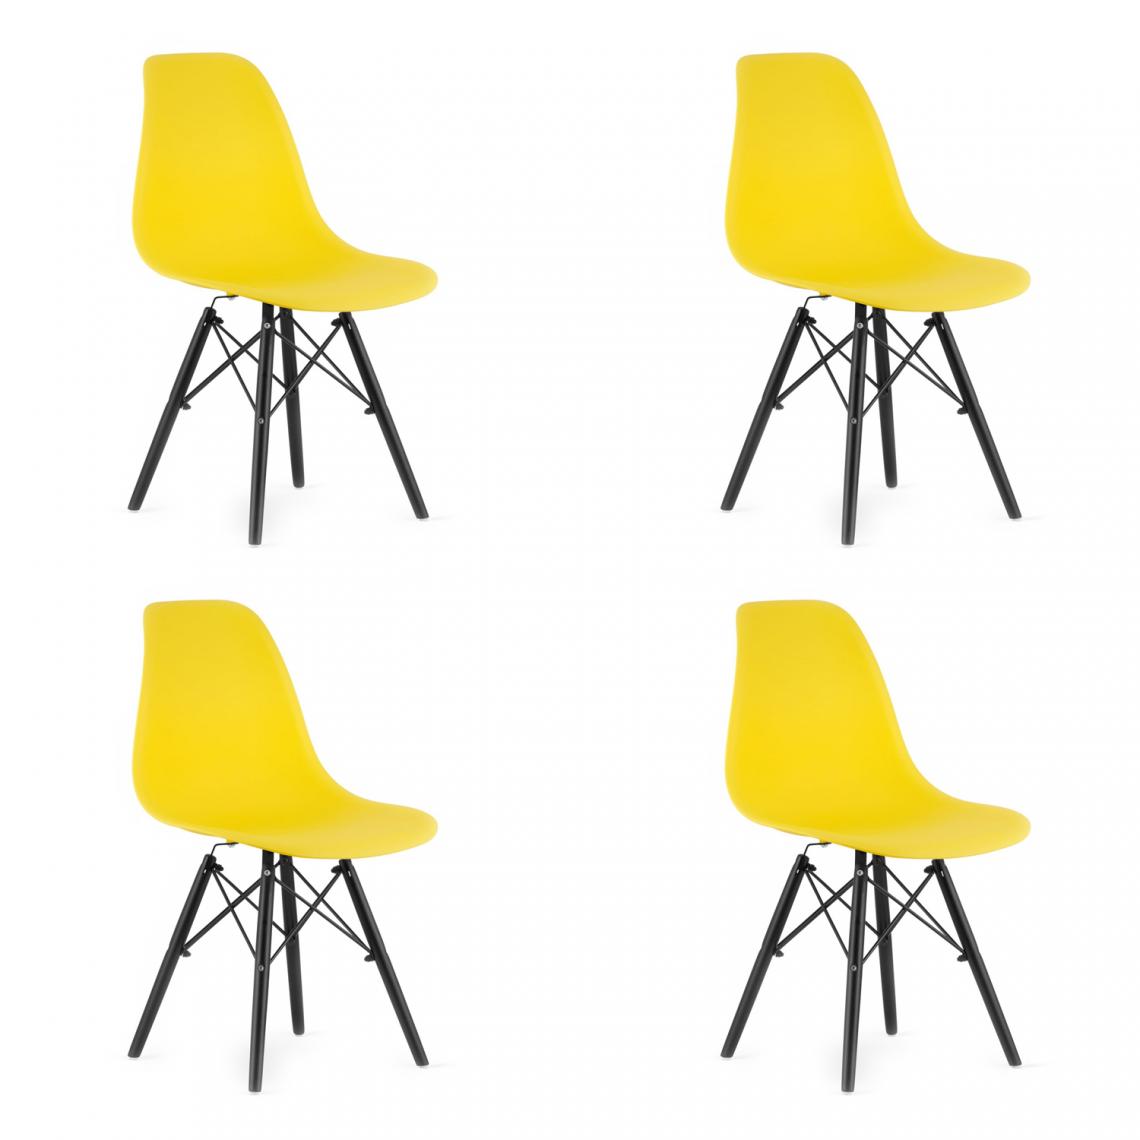 Hucoco - OSATA - Lot de 4 chaises en PP style moderne salon/cuisine - 81x54x46cm - Chaises de salle à manger - Jaune - Chaises